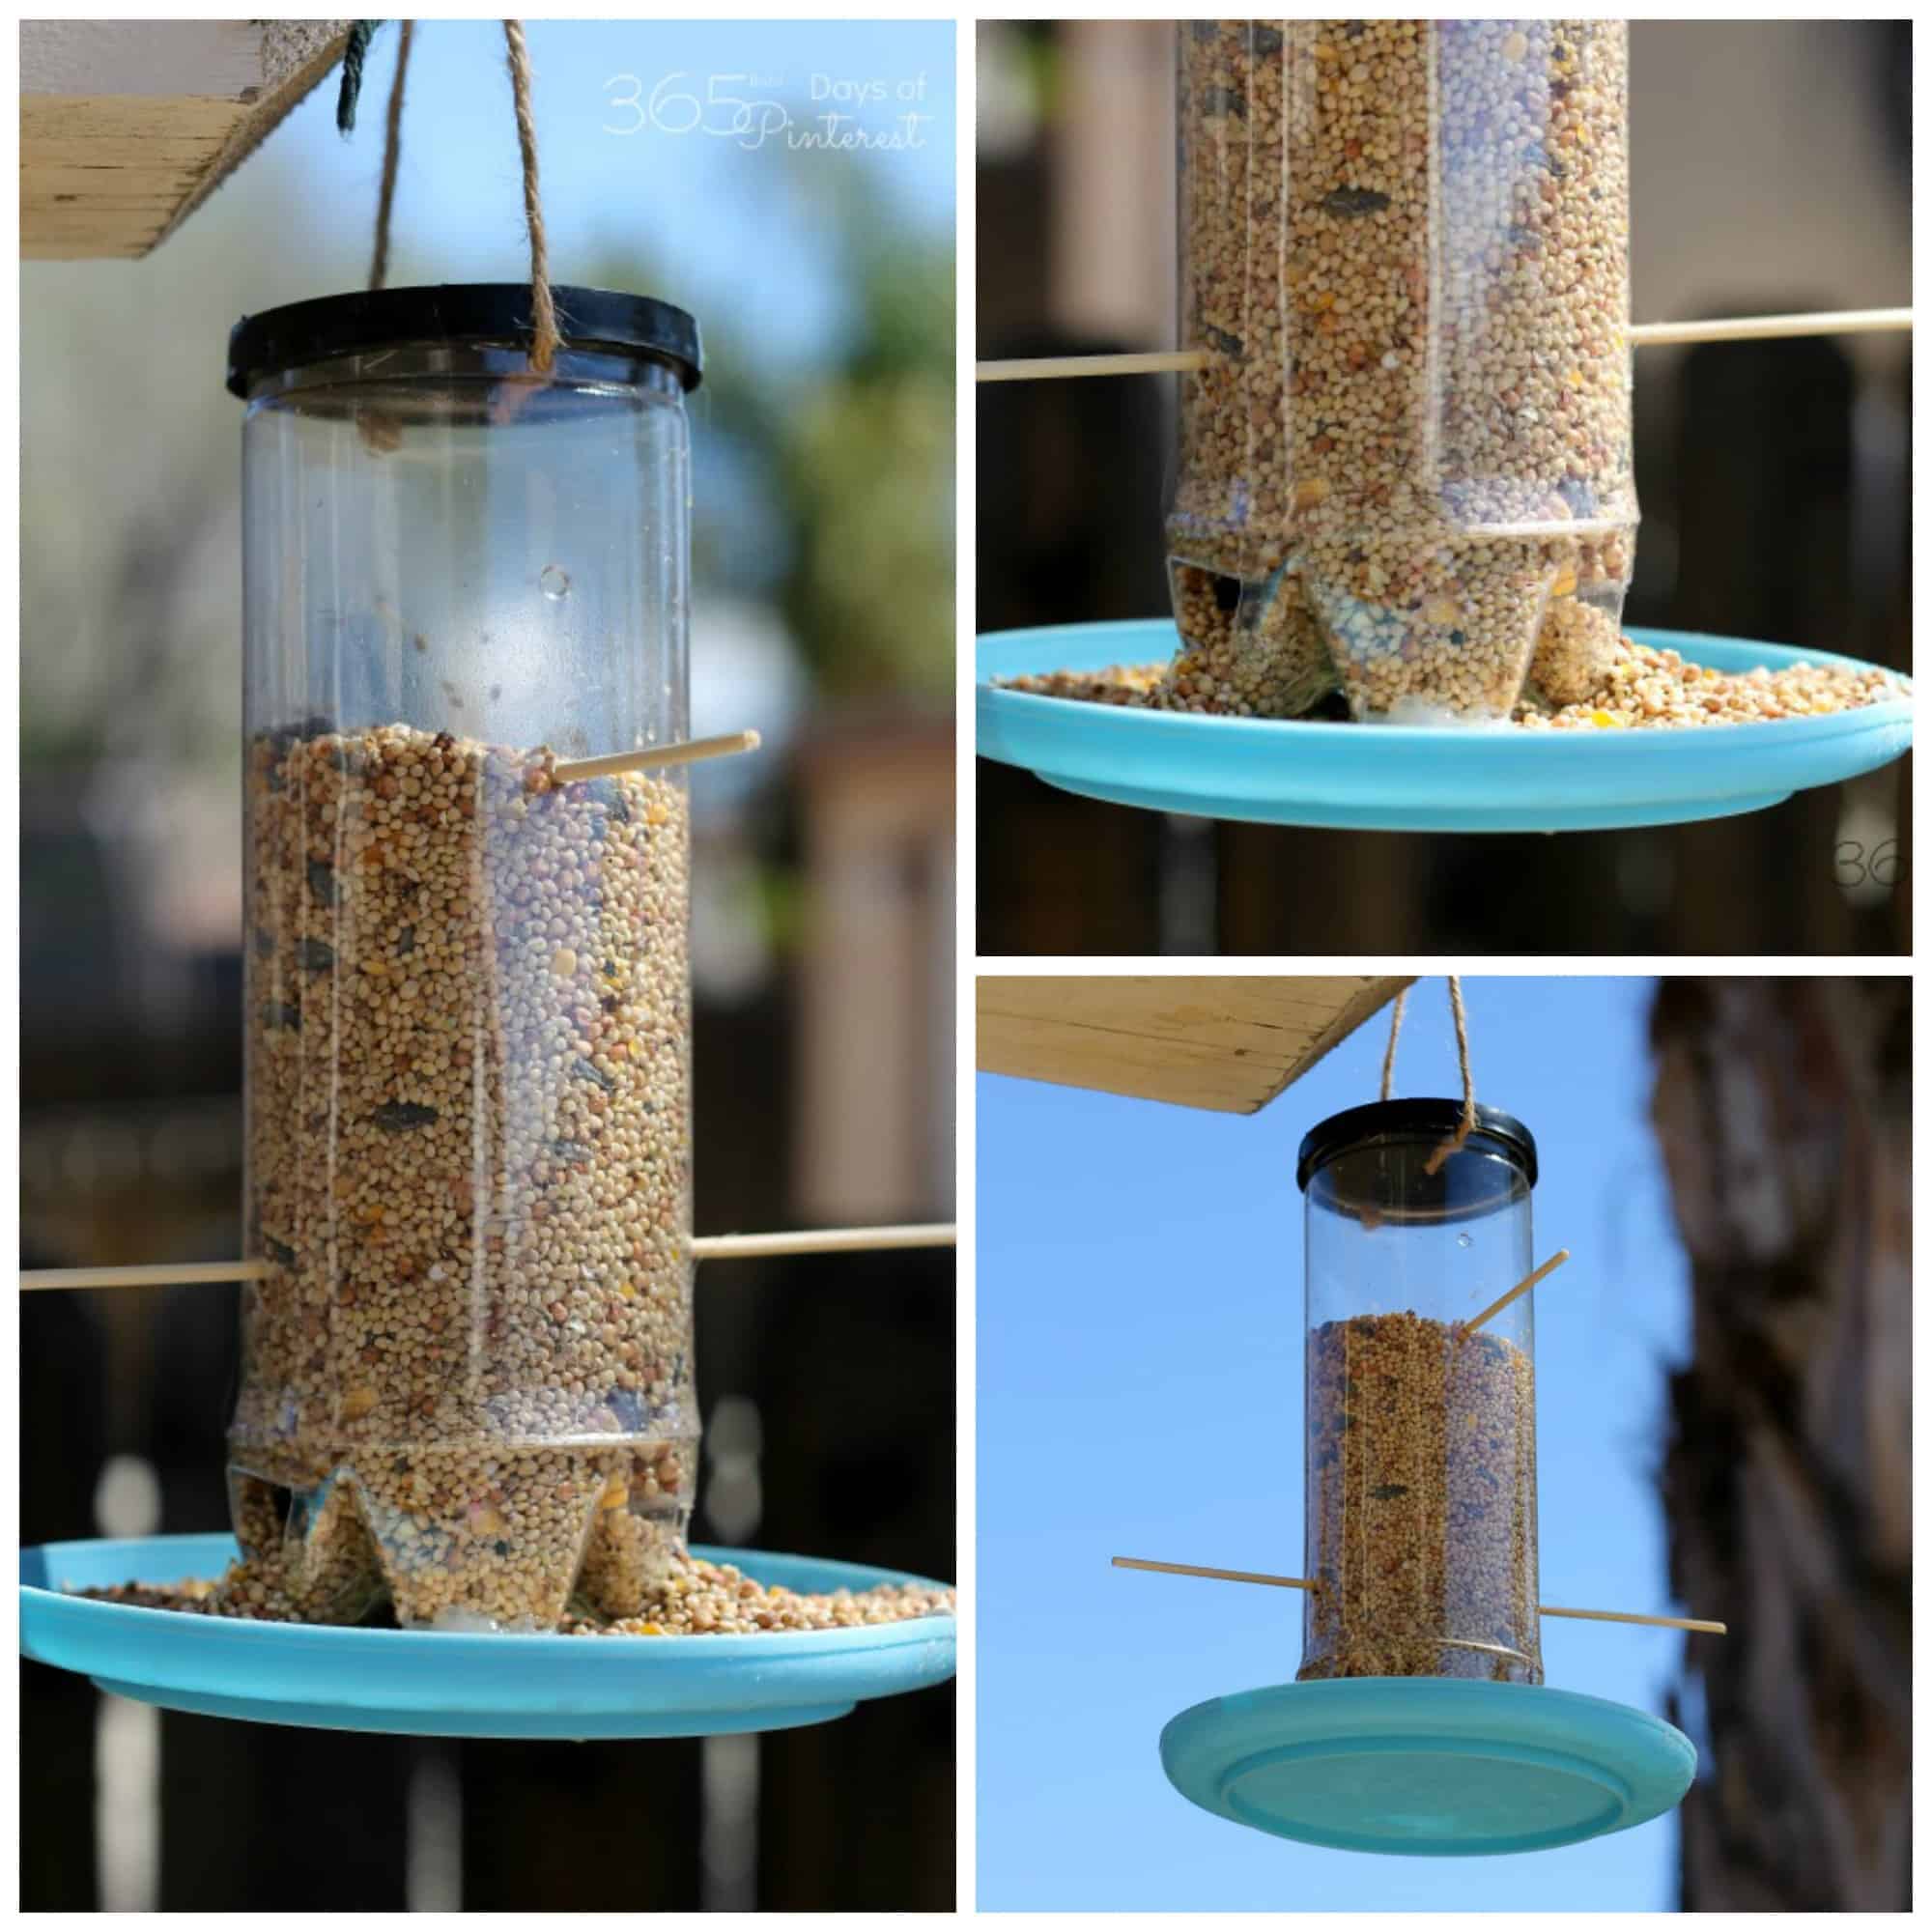 collage image of home made bird feeder using an empty tennis ball carton